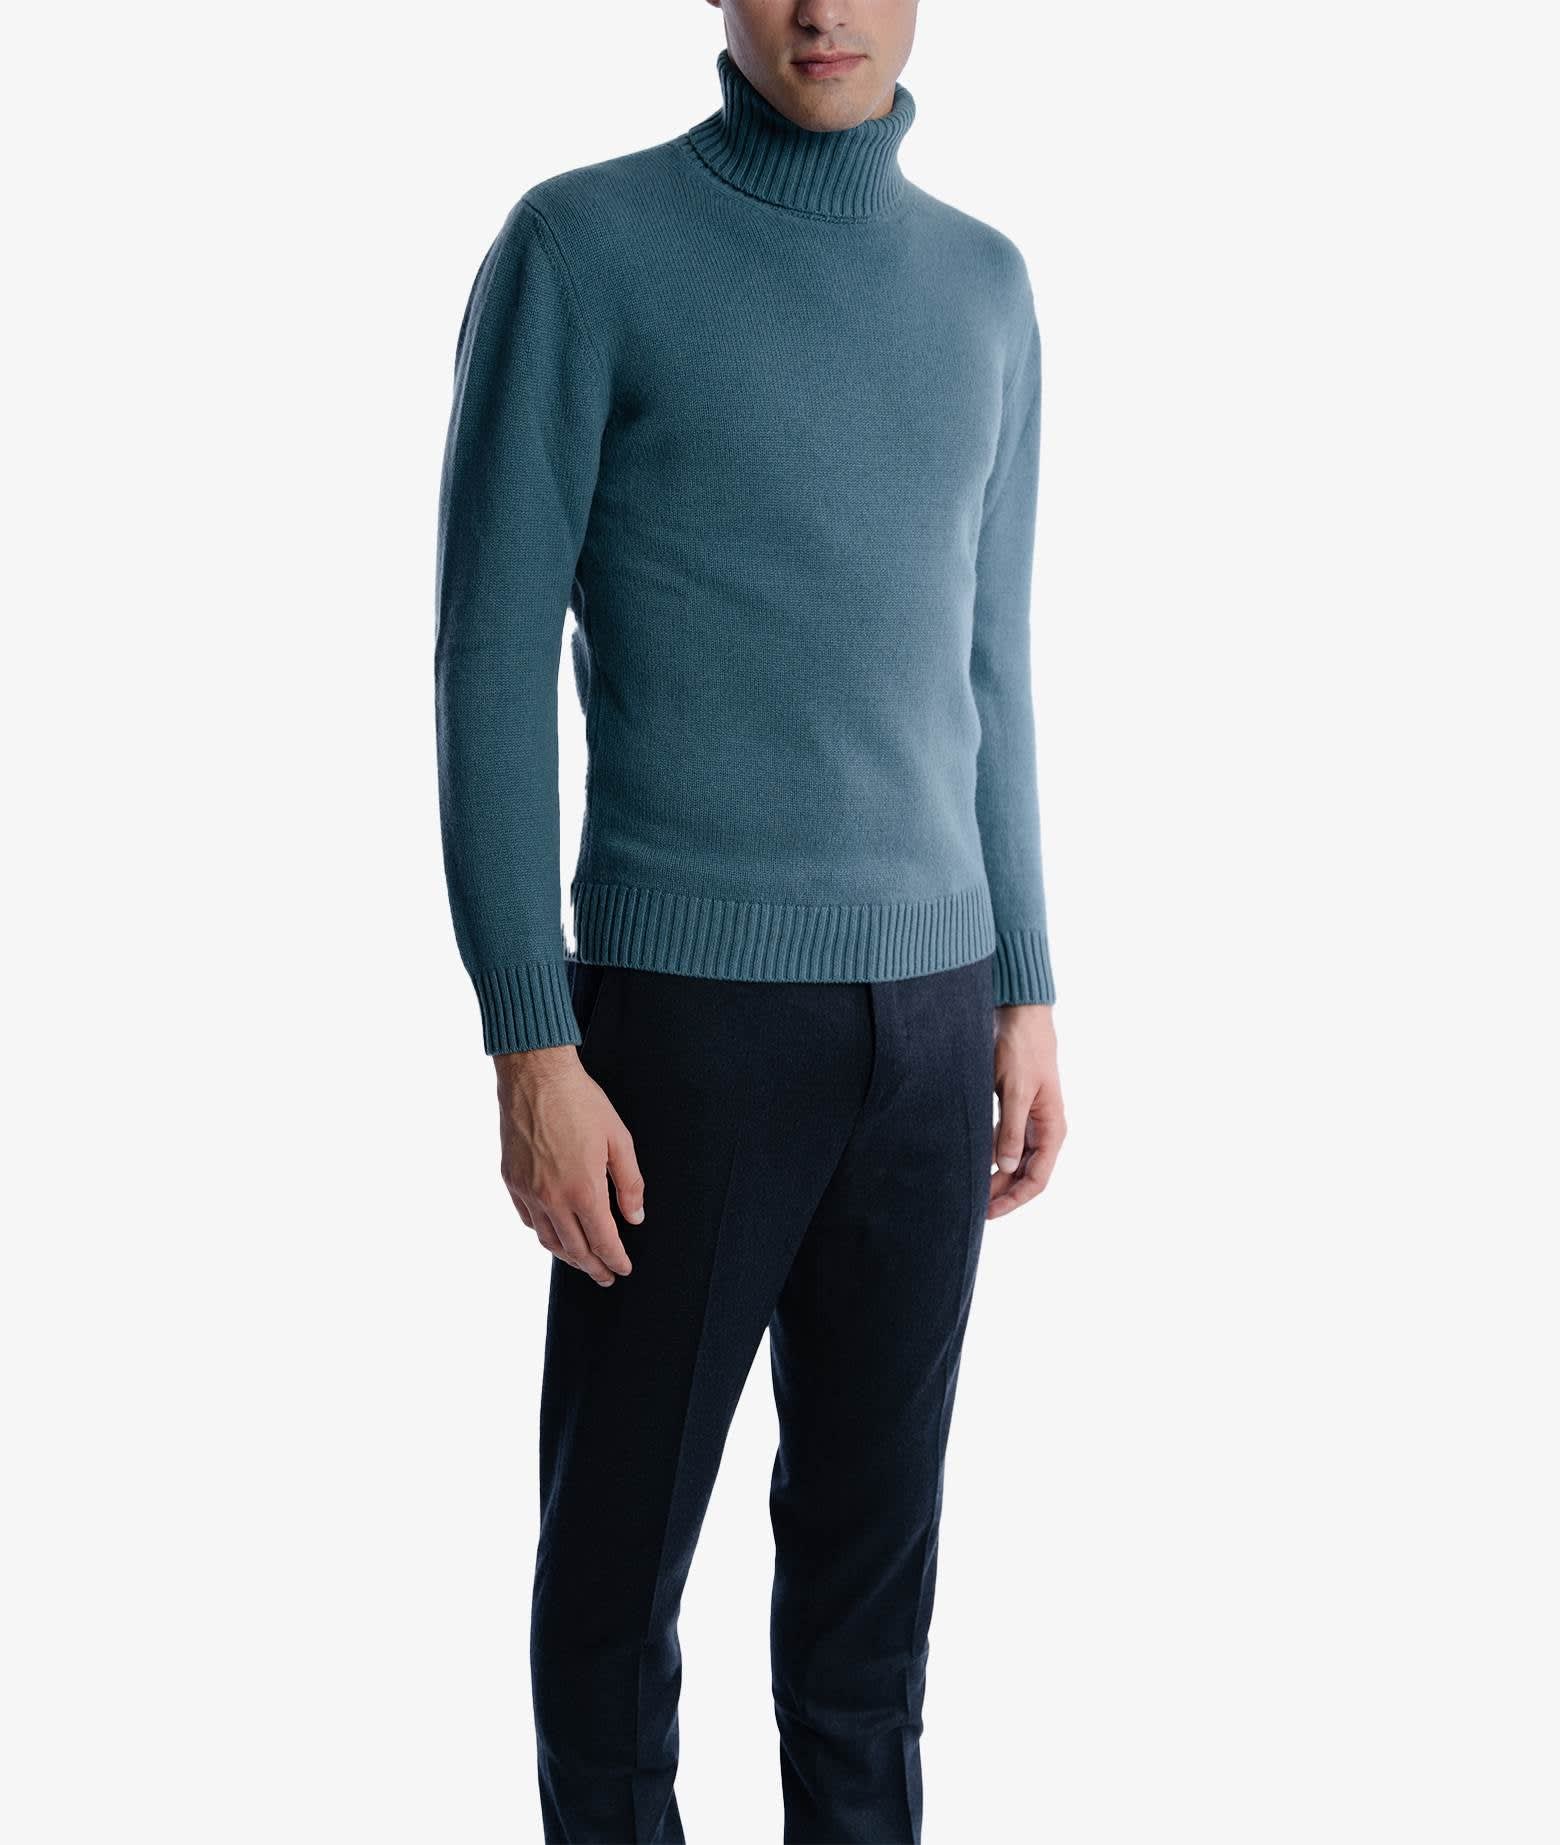 Shop Larusmiani Turtleneck Sweater Diablerets Sweater In Teal